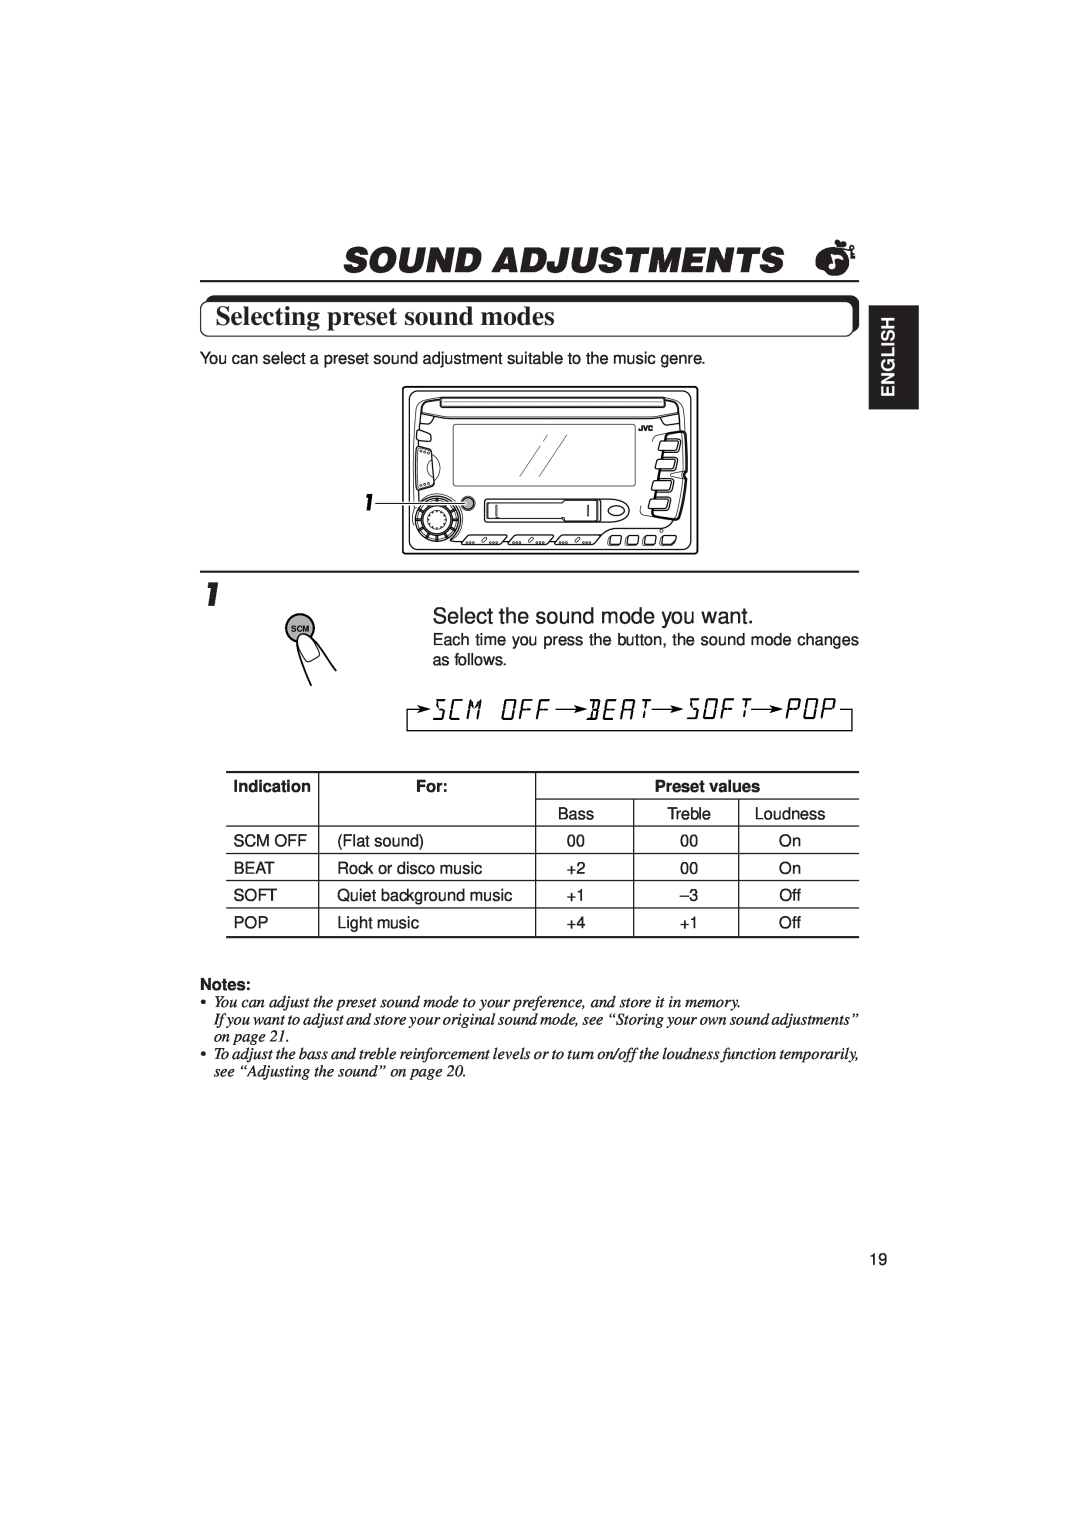 JVC KW-XC770 manual Sound Adjustments, Selecting preset sound modes, English, Indication, Preset values 